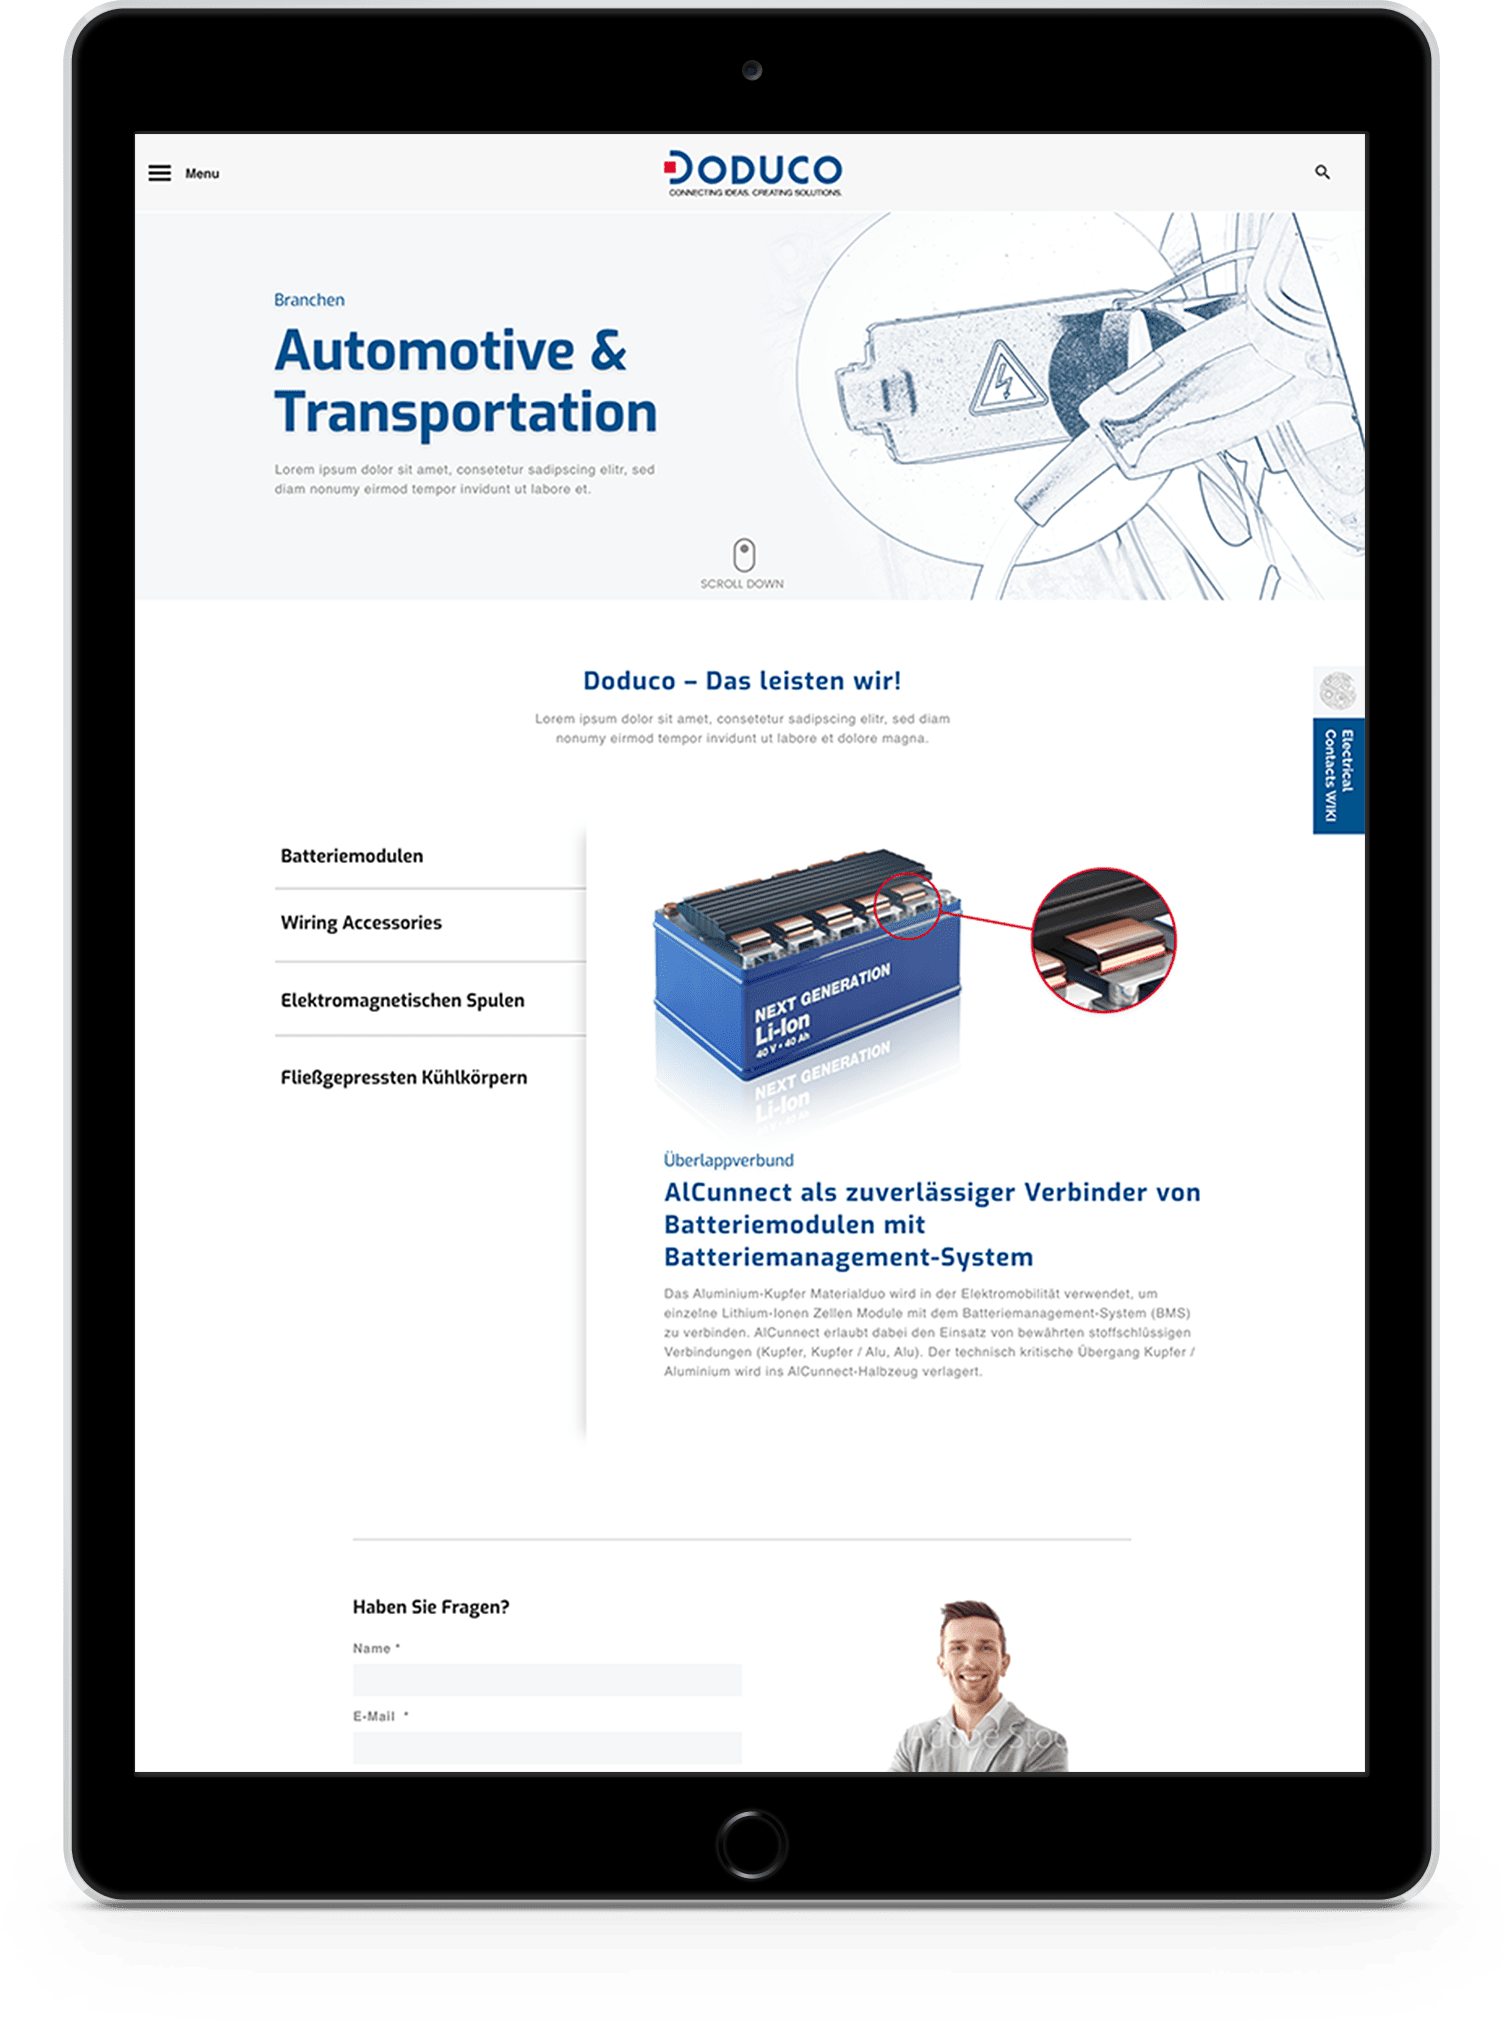 doduco Tablet Automotive Transportation - Bärenstark - Advertising Agency from Karlsruhe Mühlburg